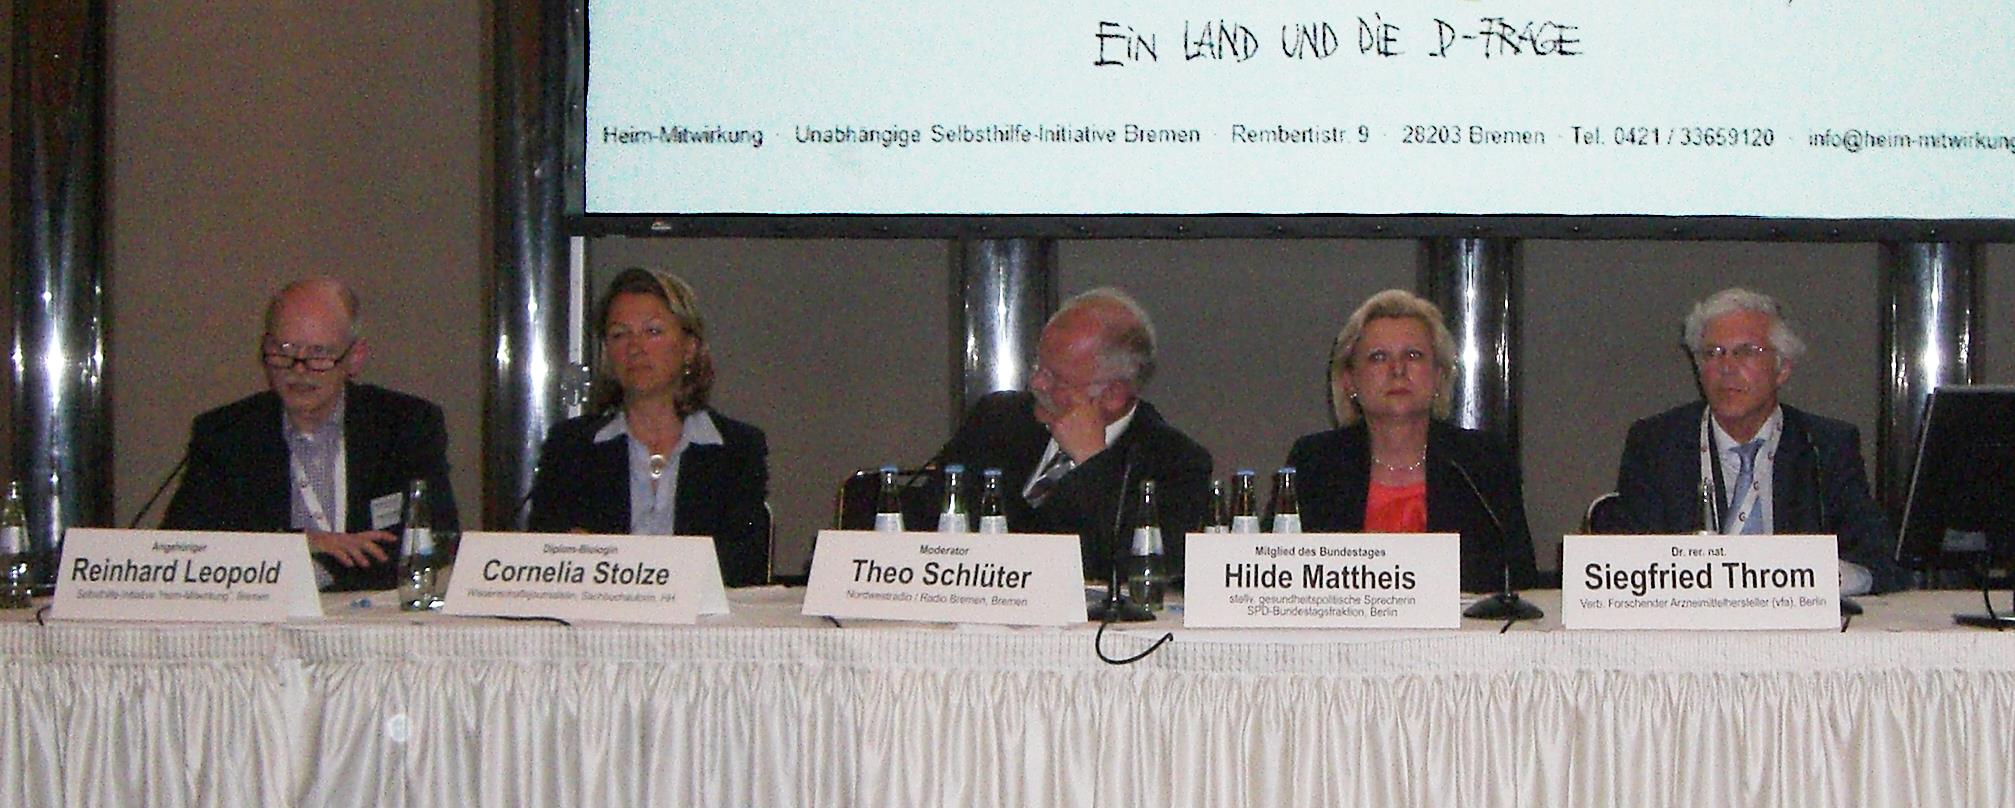 Gäste bei der Podiumsdiskussion (v.l.) Reinhard Leopold, Cornelia Stolze, Theo Schlüter (Moderator), Hilde Mattheis, Siegfried Throm